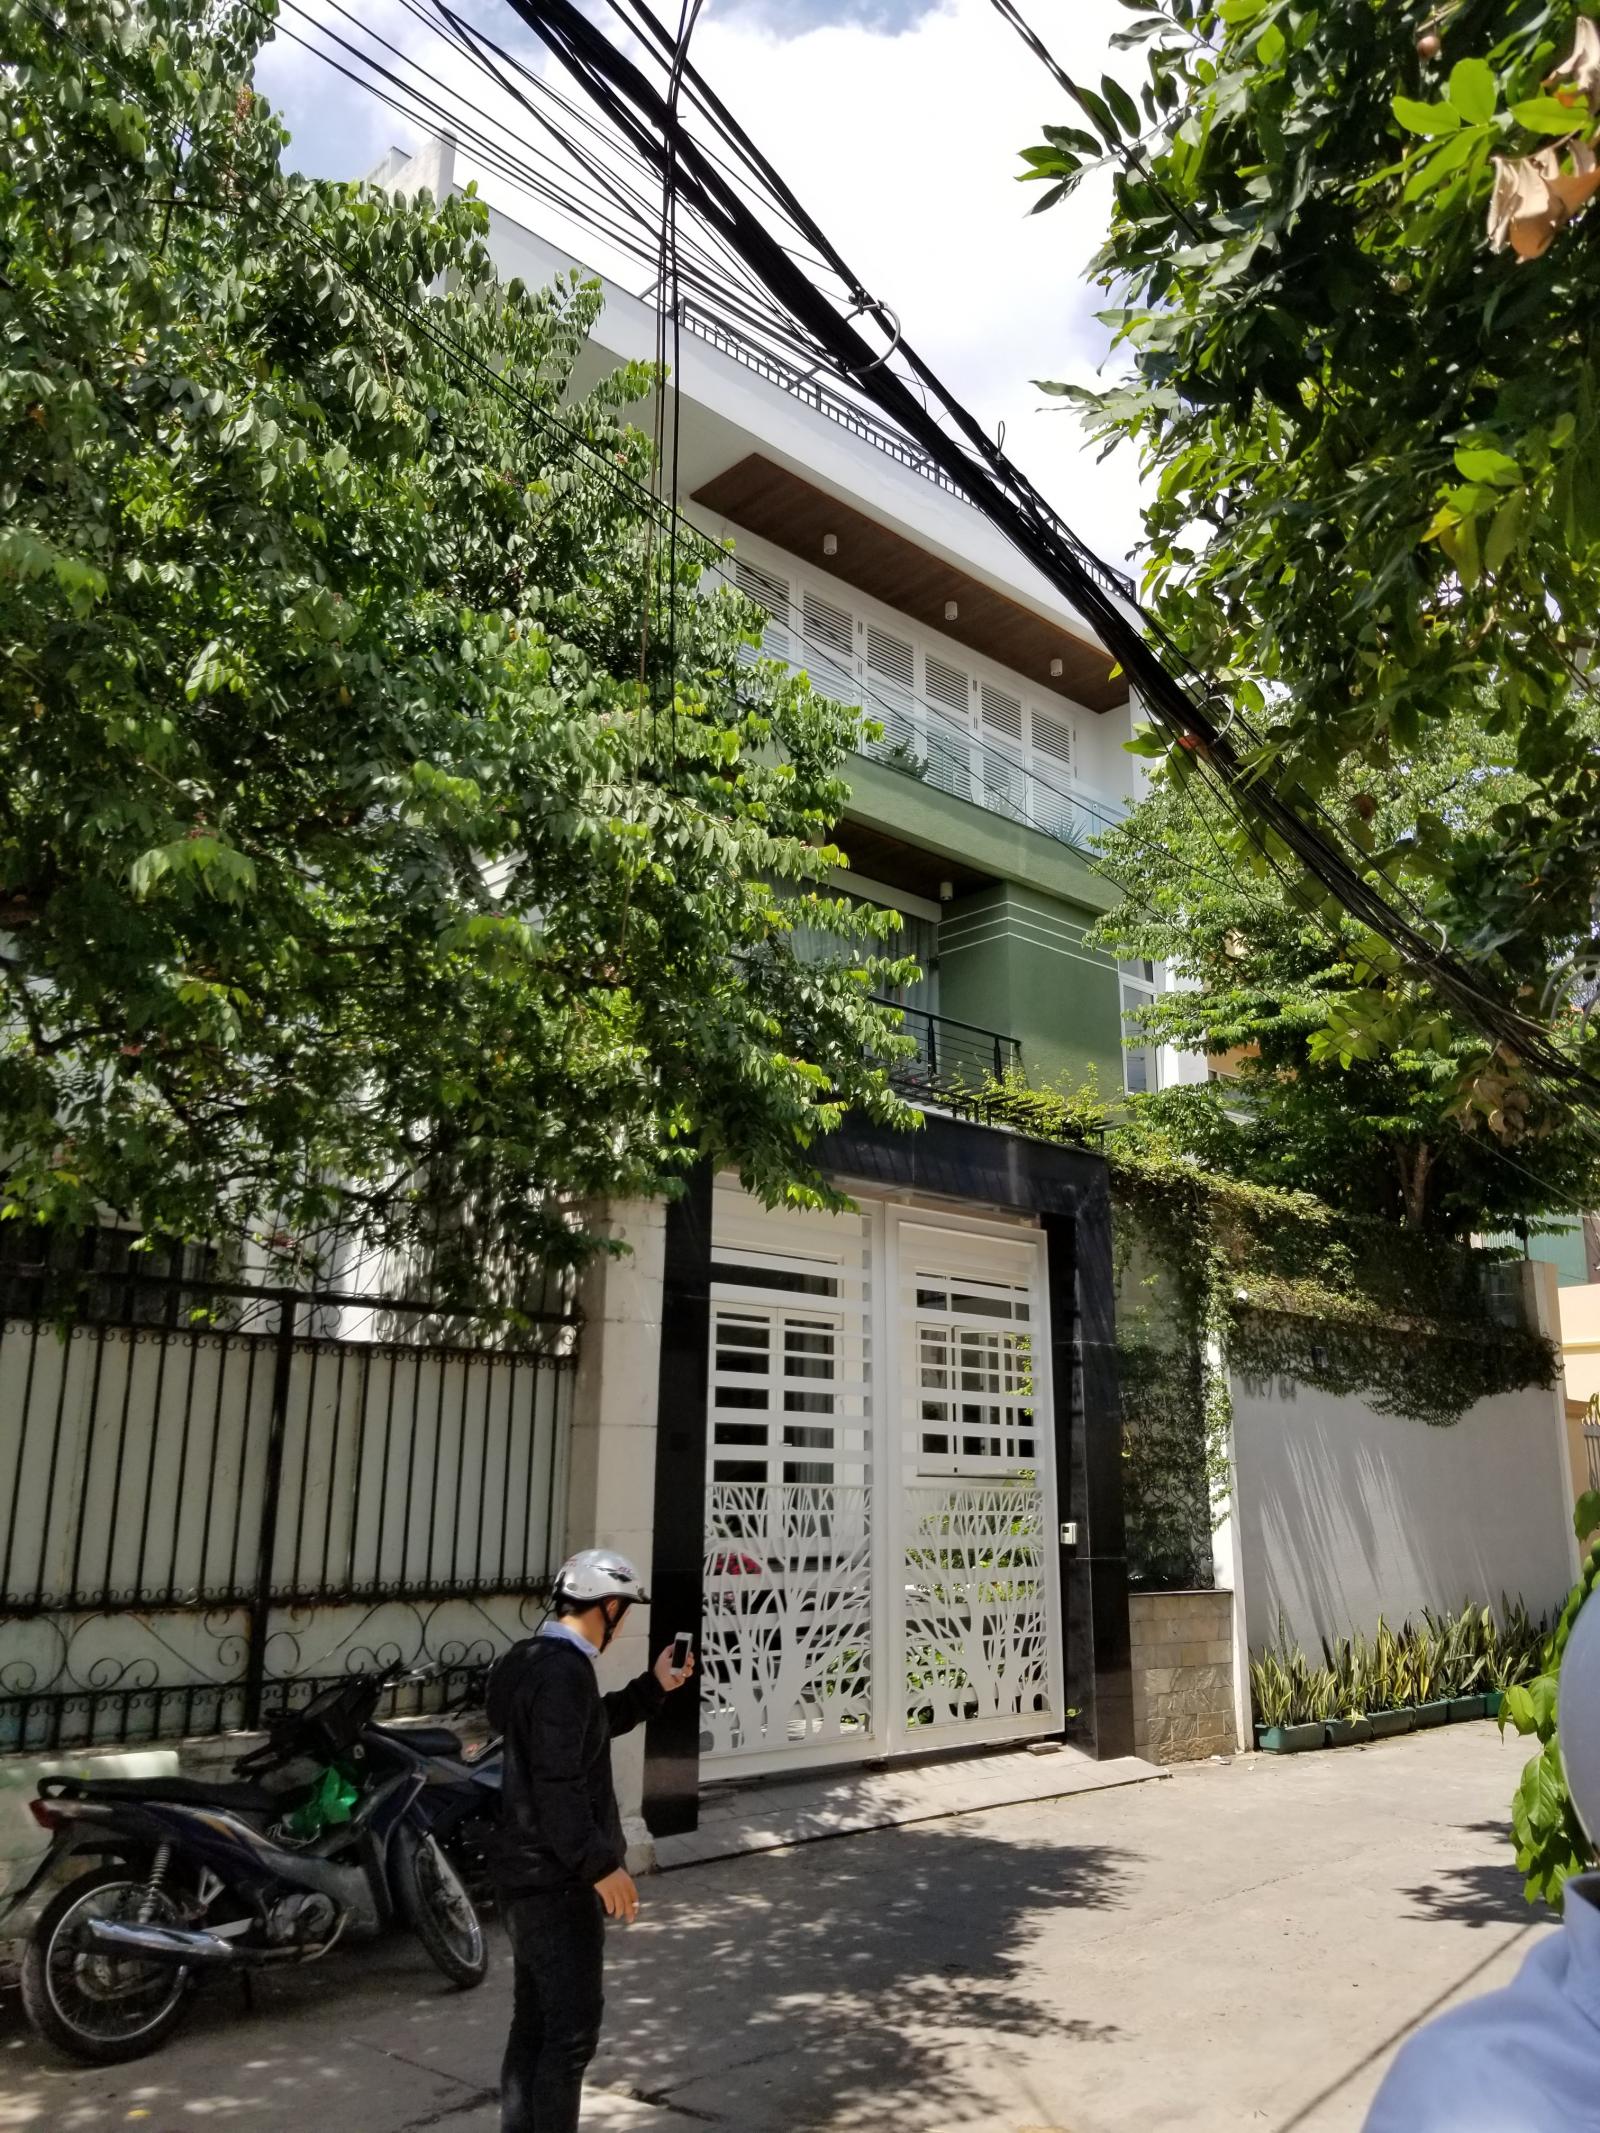 Bán nhà hẻm 101 đường Nguyễn Chí Thanh ngay vòng xoay ngã 6, Phường 9, Quận 5.